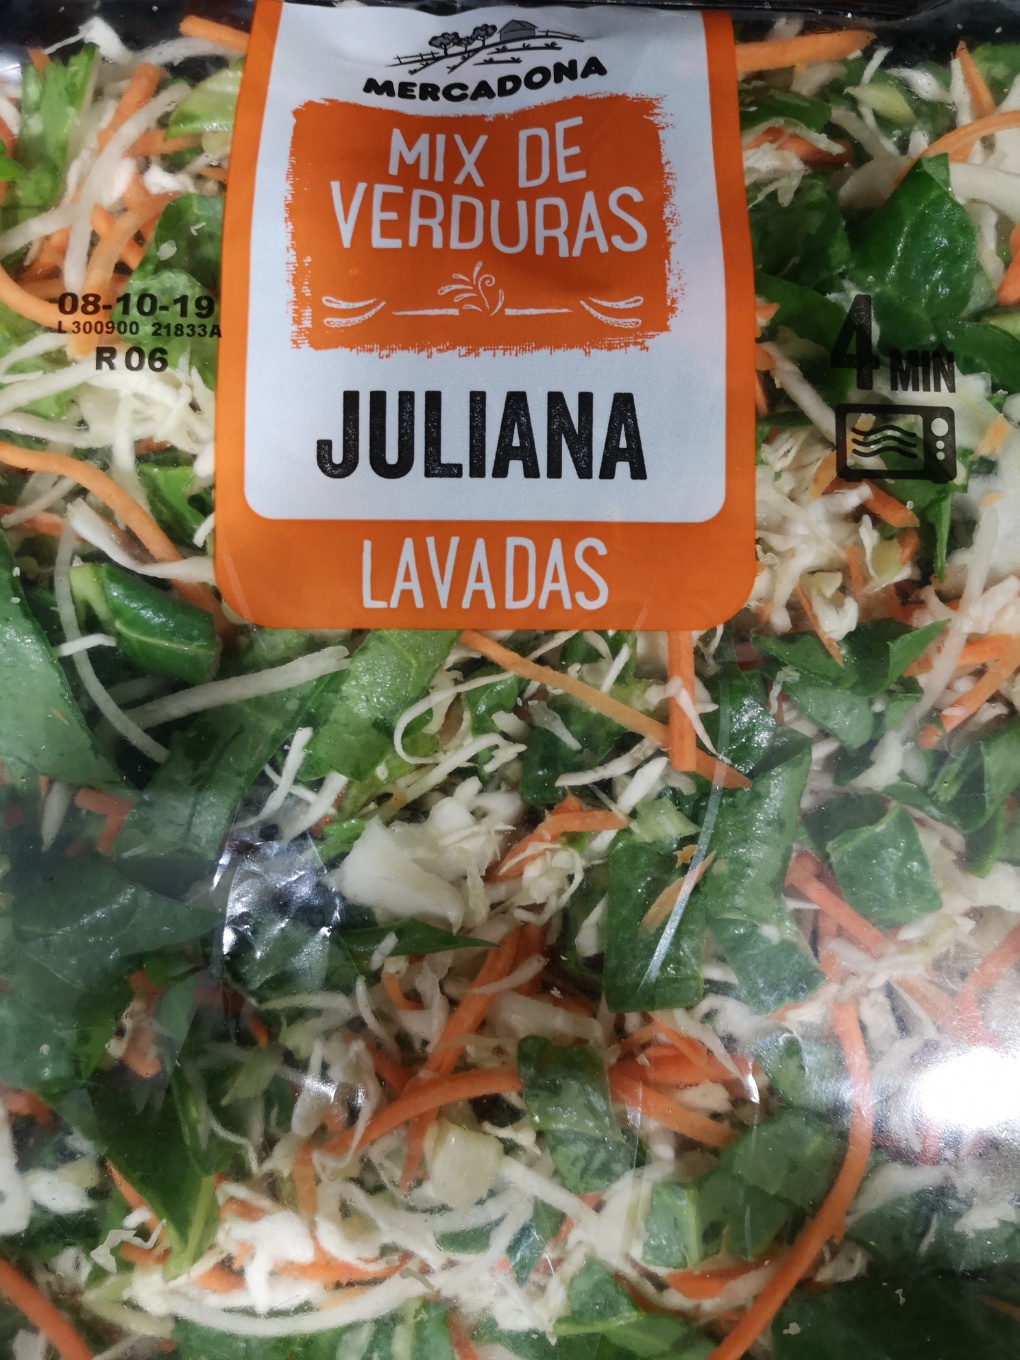 Mix de verduras juliana